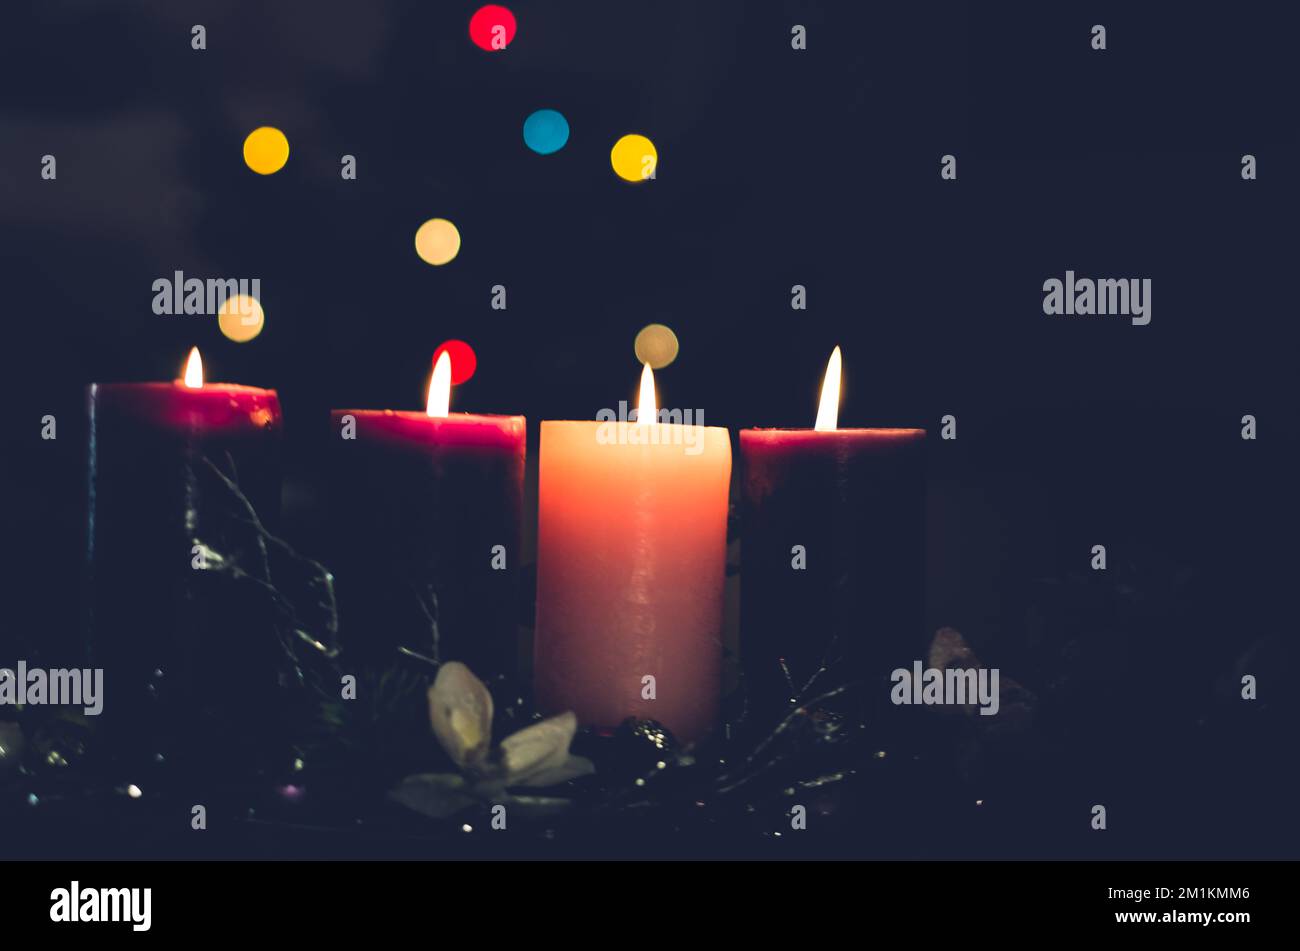 3 candele viola e 1 candele rosa che bruciano sulla corona dell'avvento Foto Stock